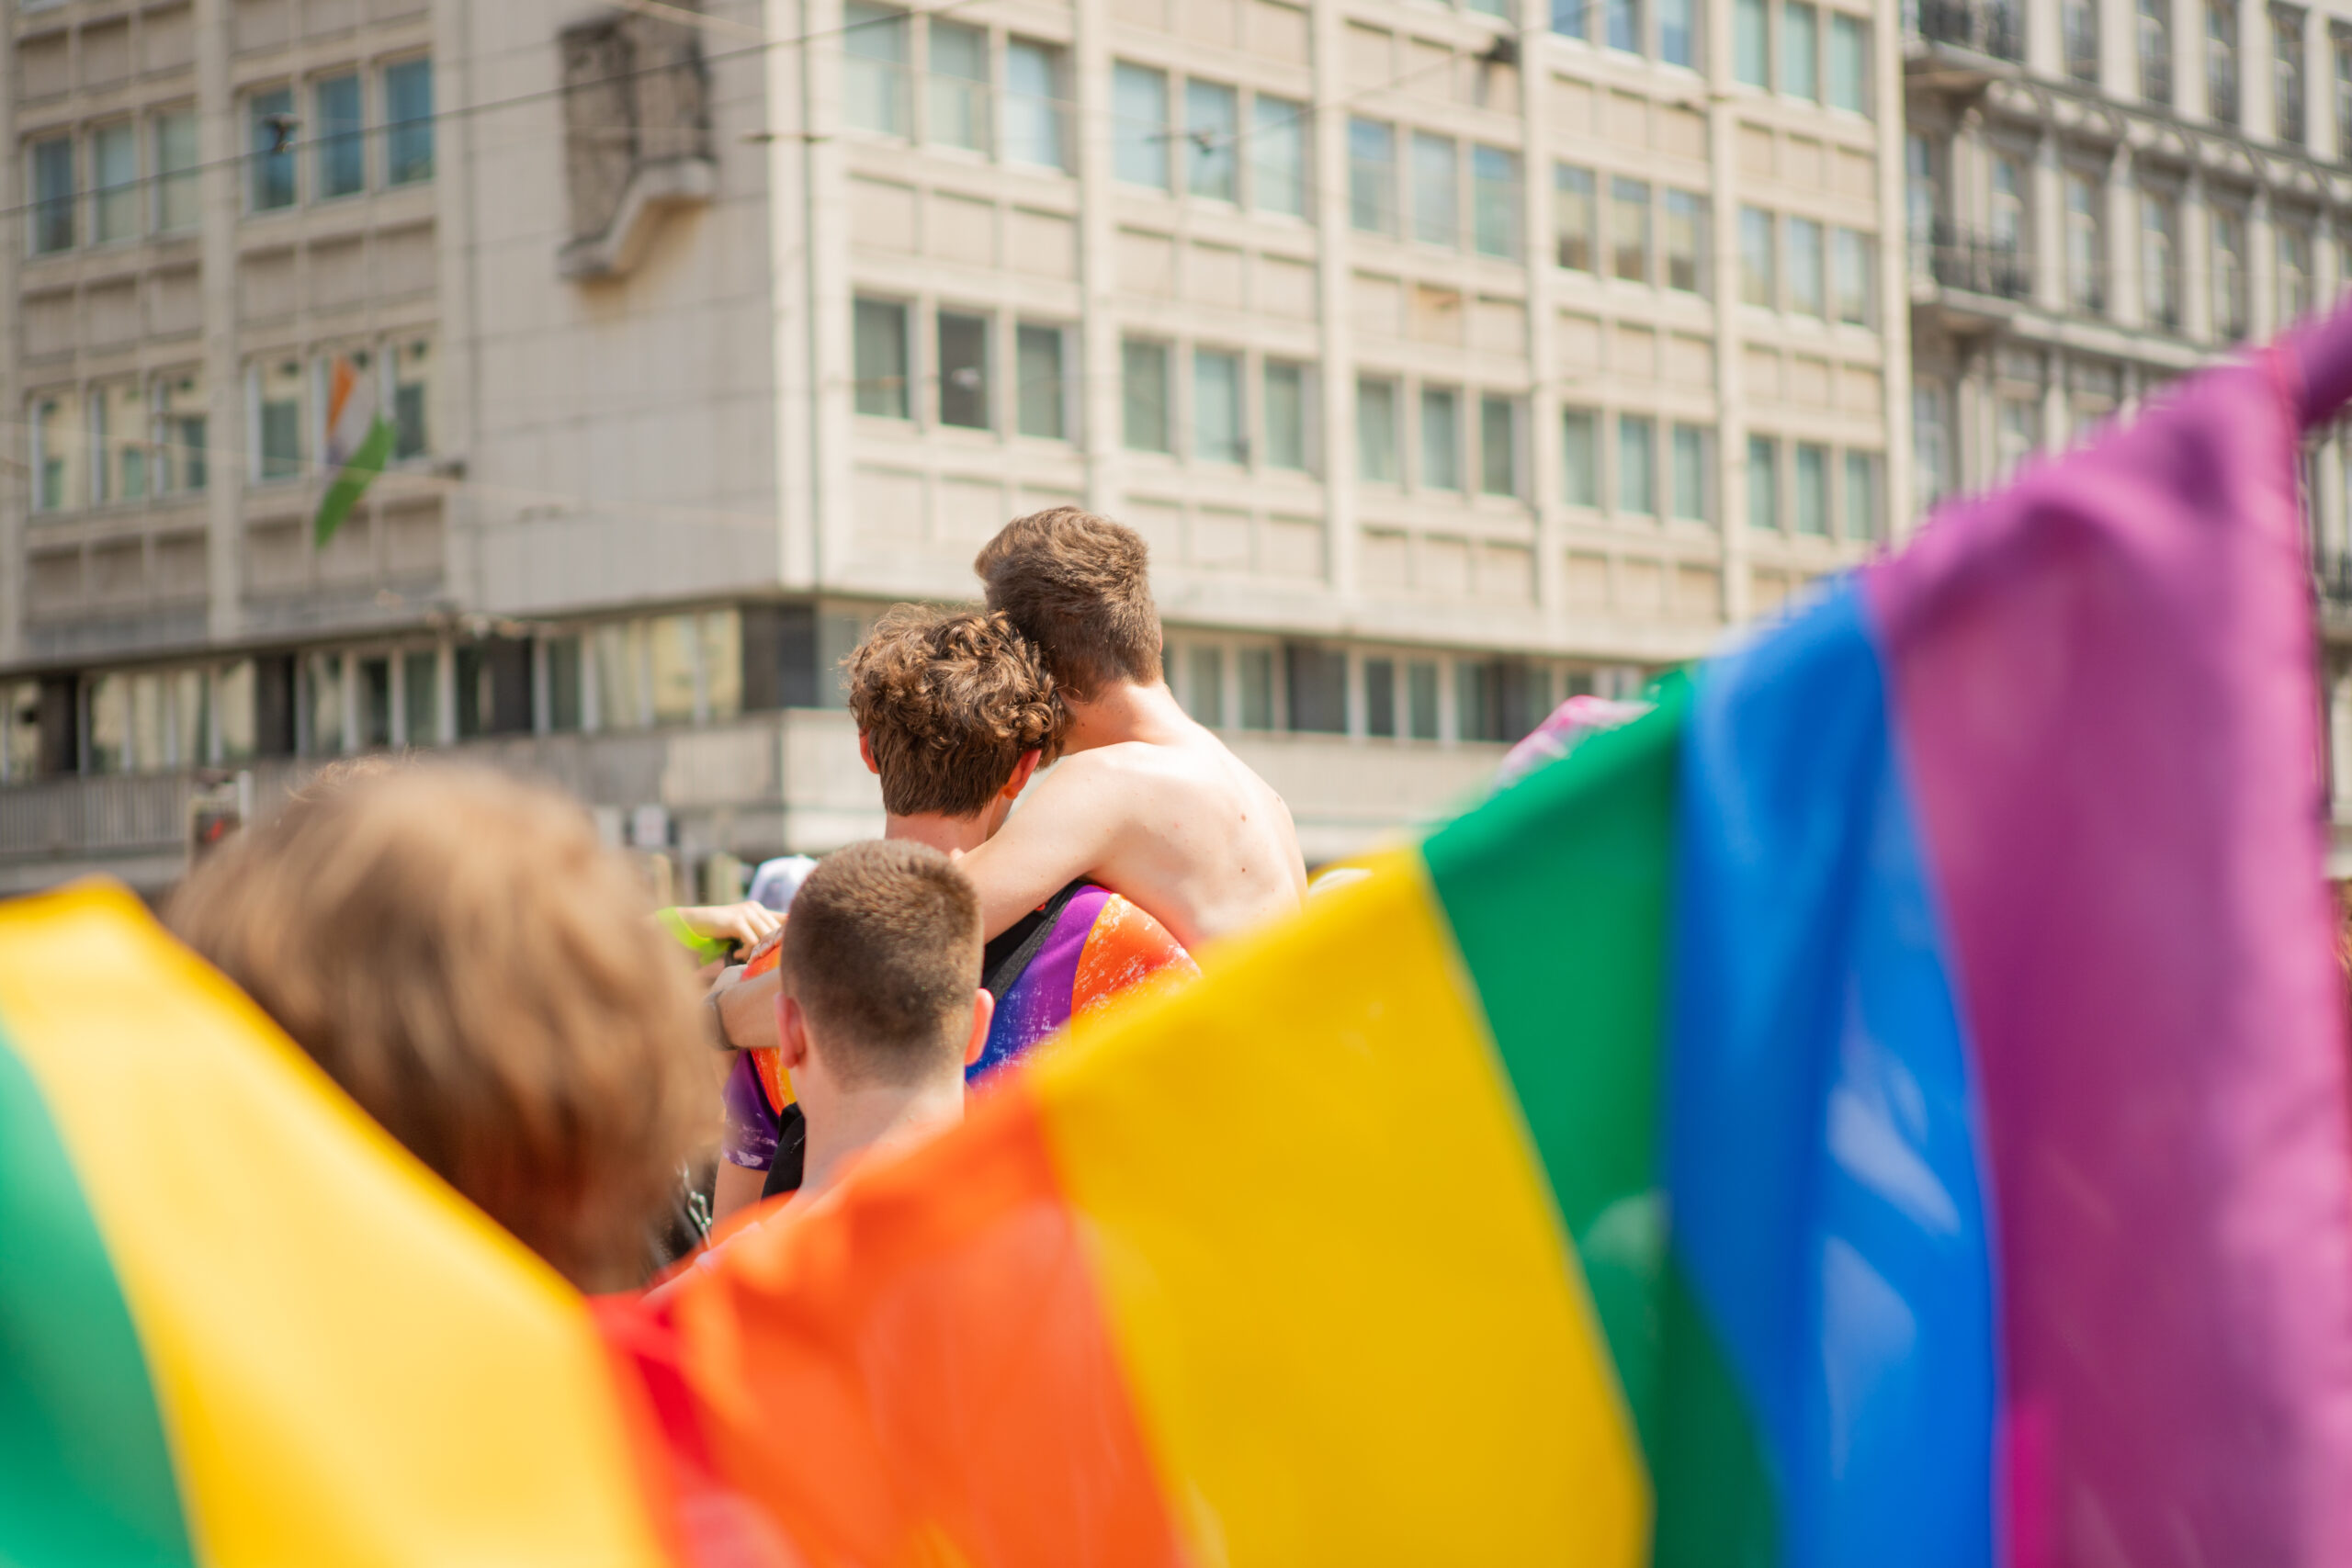 Fotos von der Vienna Pride 2021